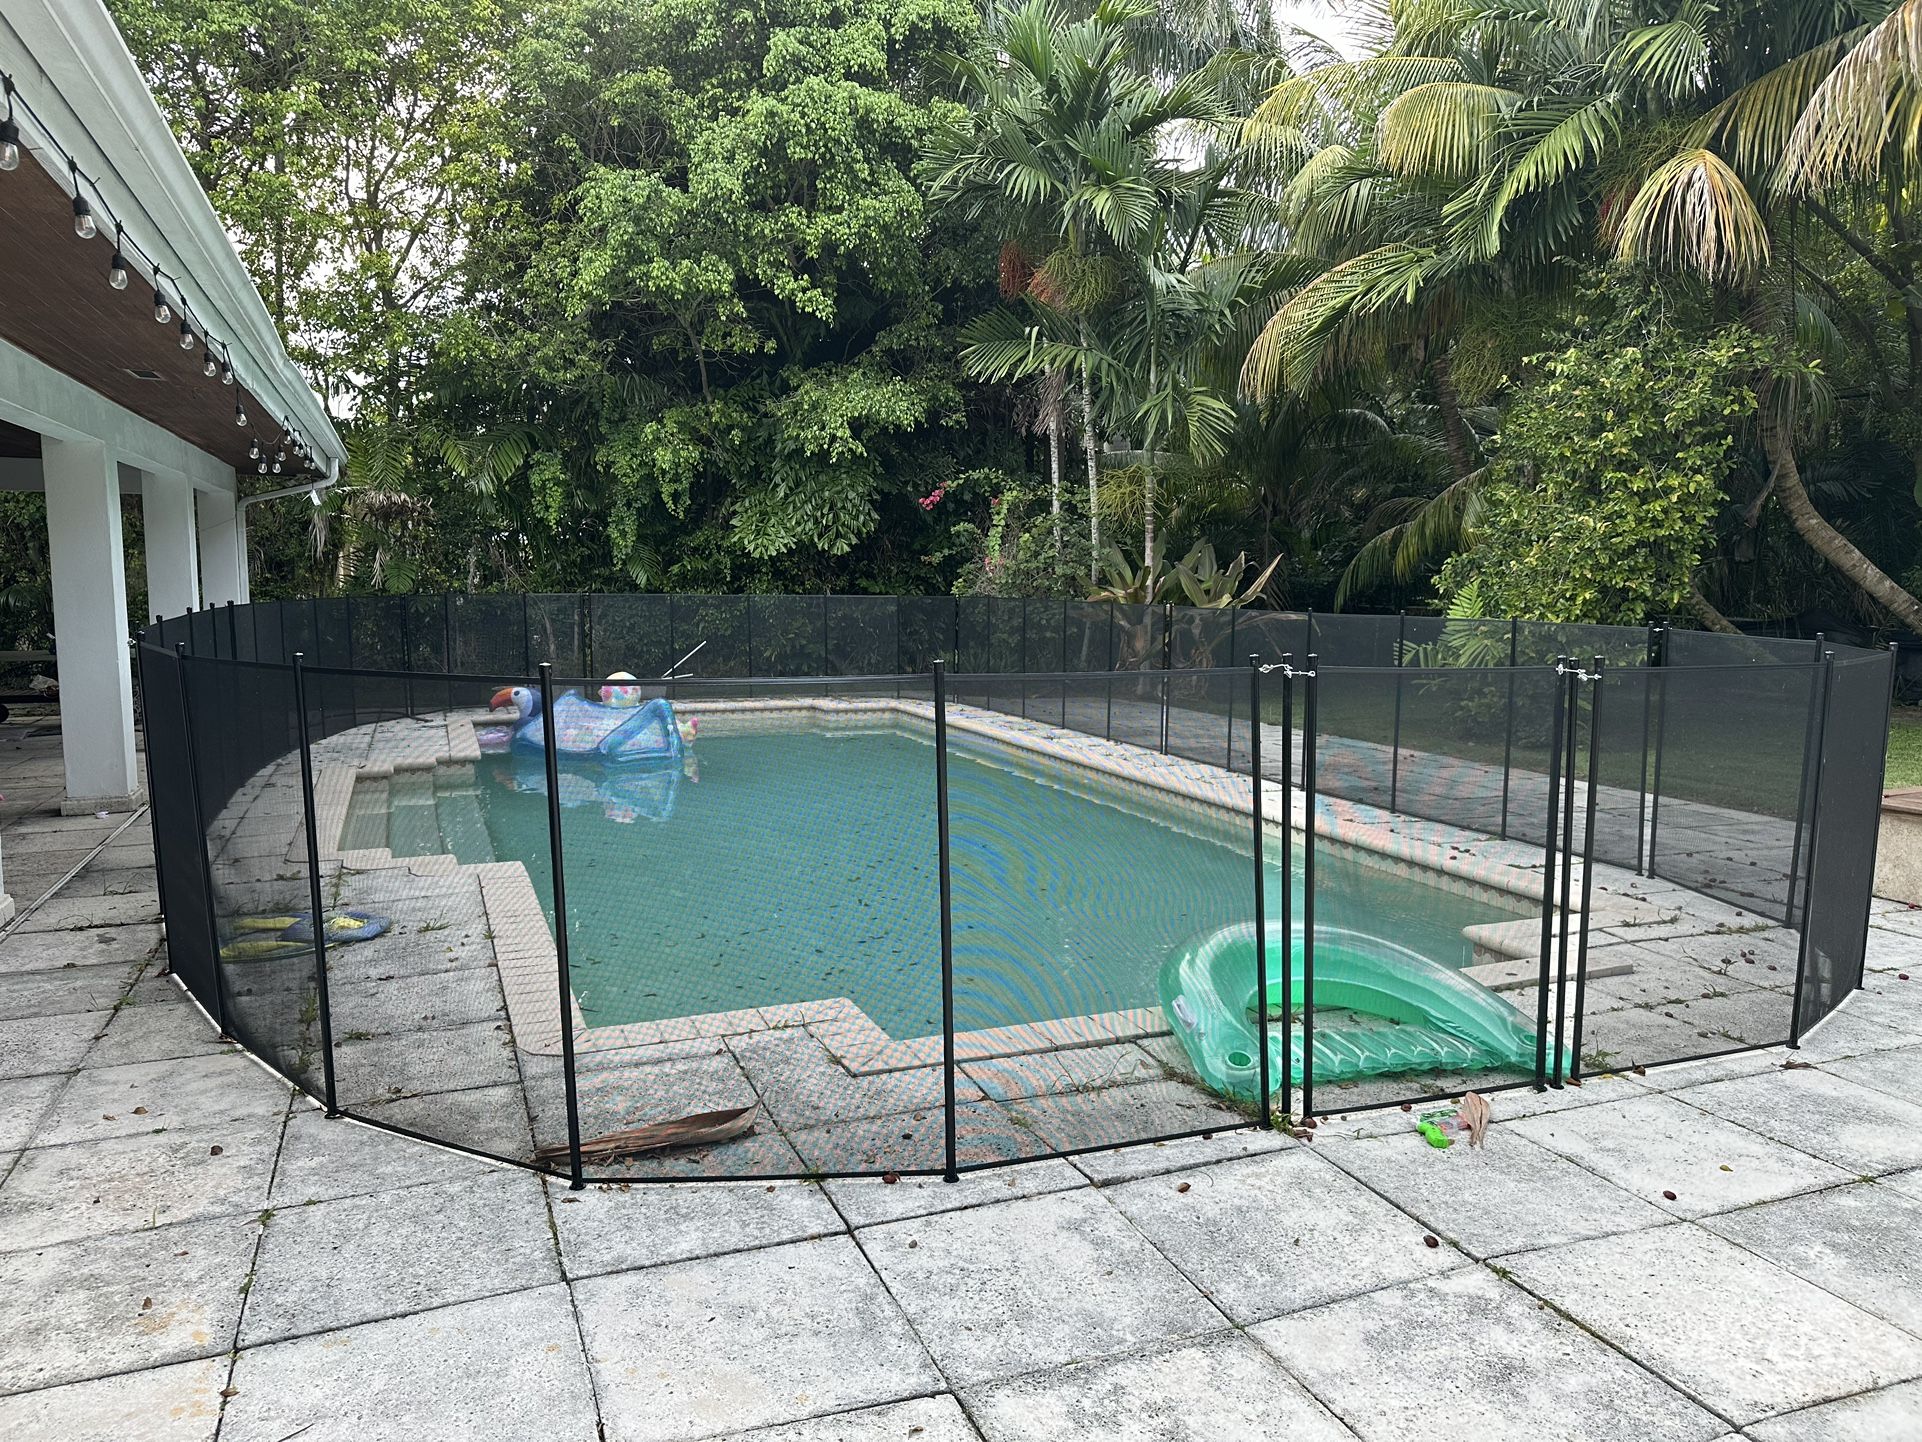 Pool Fence 